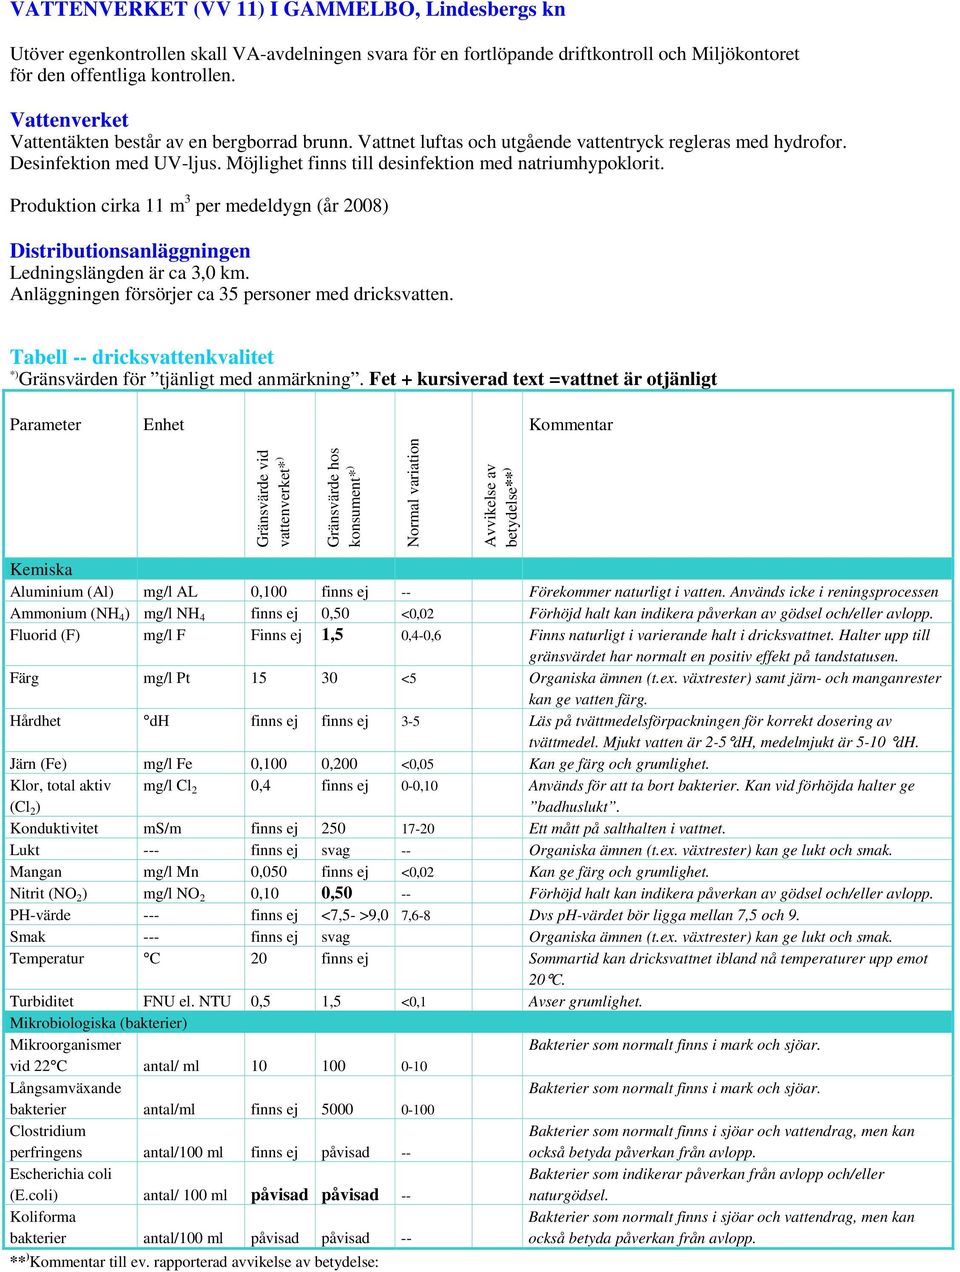 Ammonium (NH 4 ) mg/l NH 4 finns ej 0,50 <0,02 Förhöjd halt kan indikera påverkan av gödsel och/eller avlopp. Fluorid (F) mg/l F Finns ej 1,5 0,4-0,6 Finns naturligt i varierande halt i dricksvattnet.